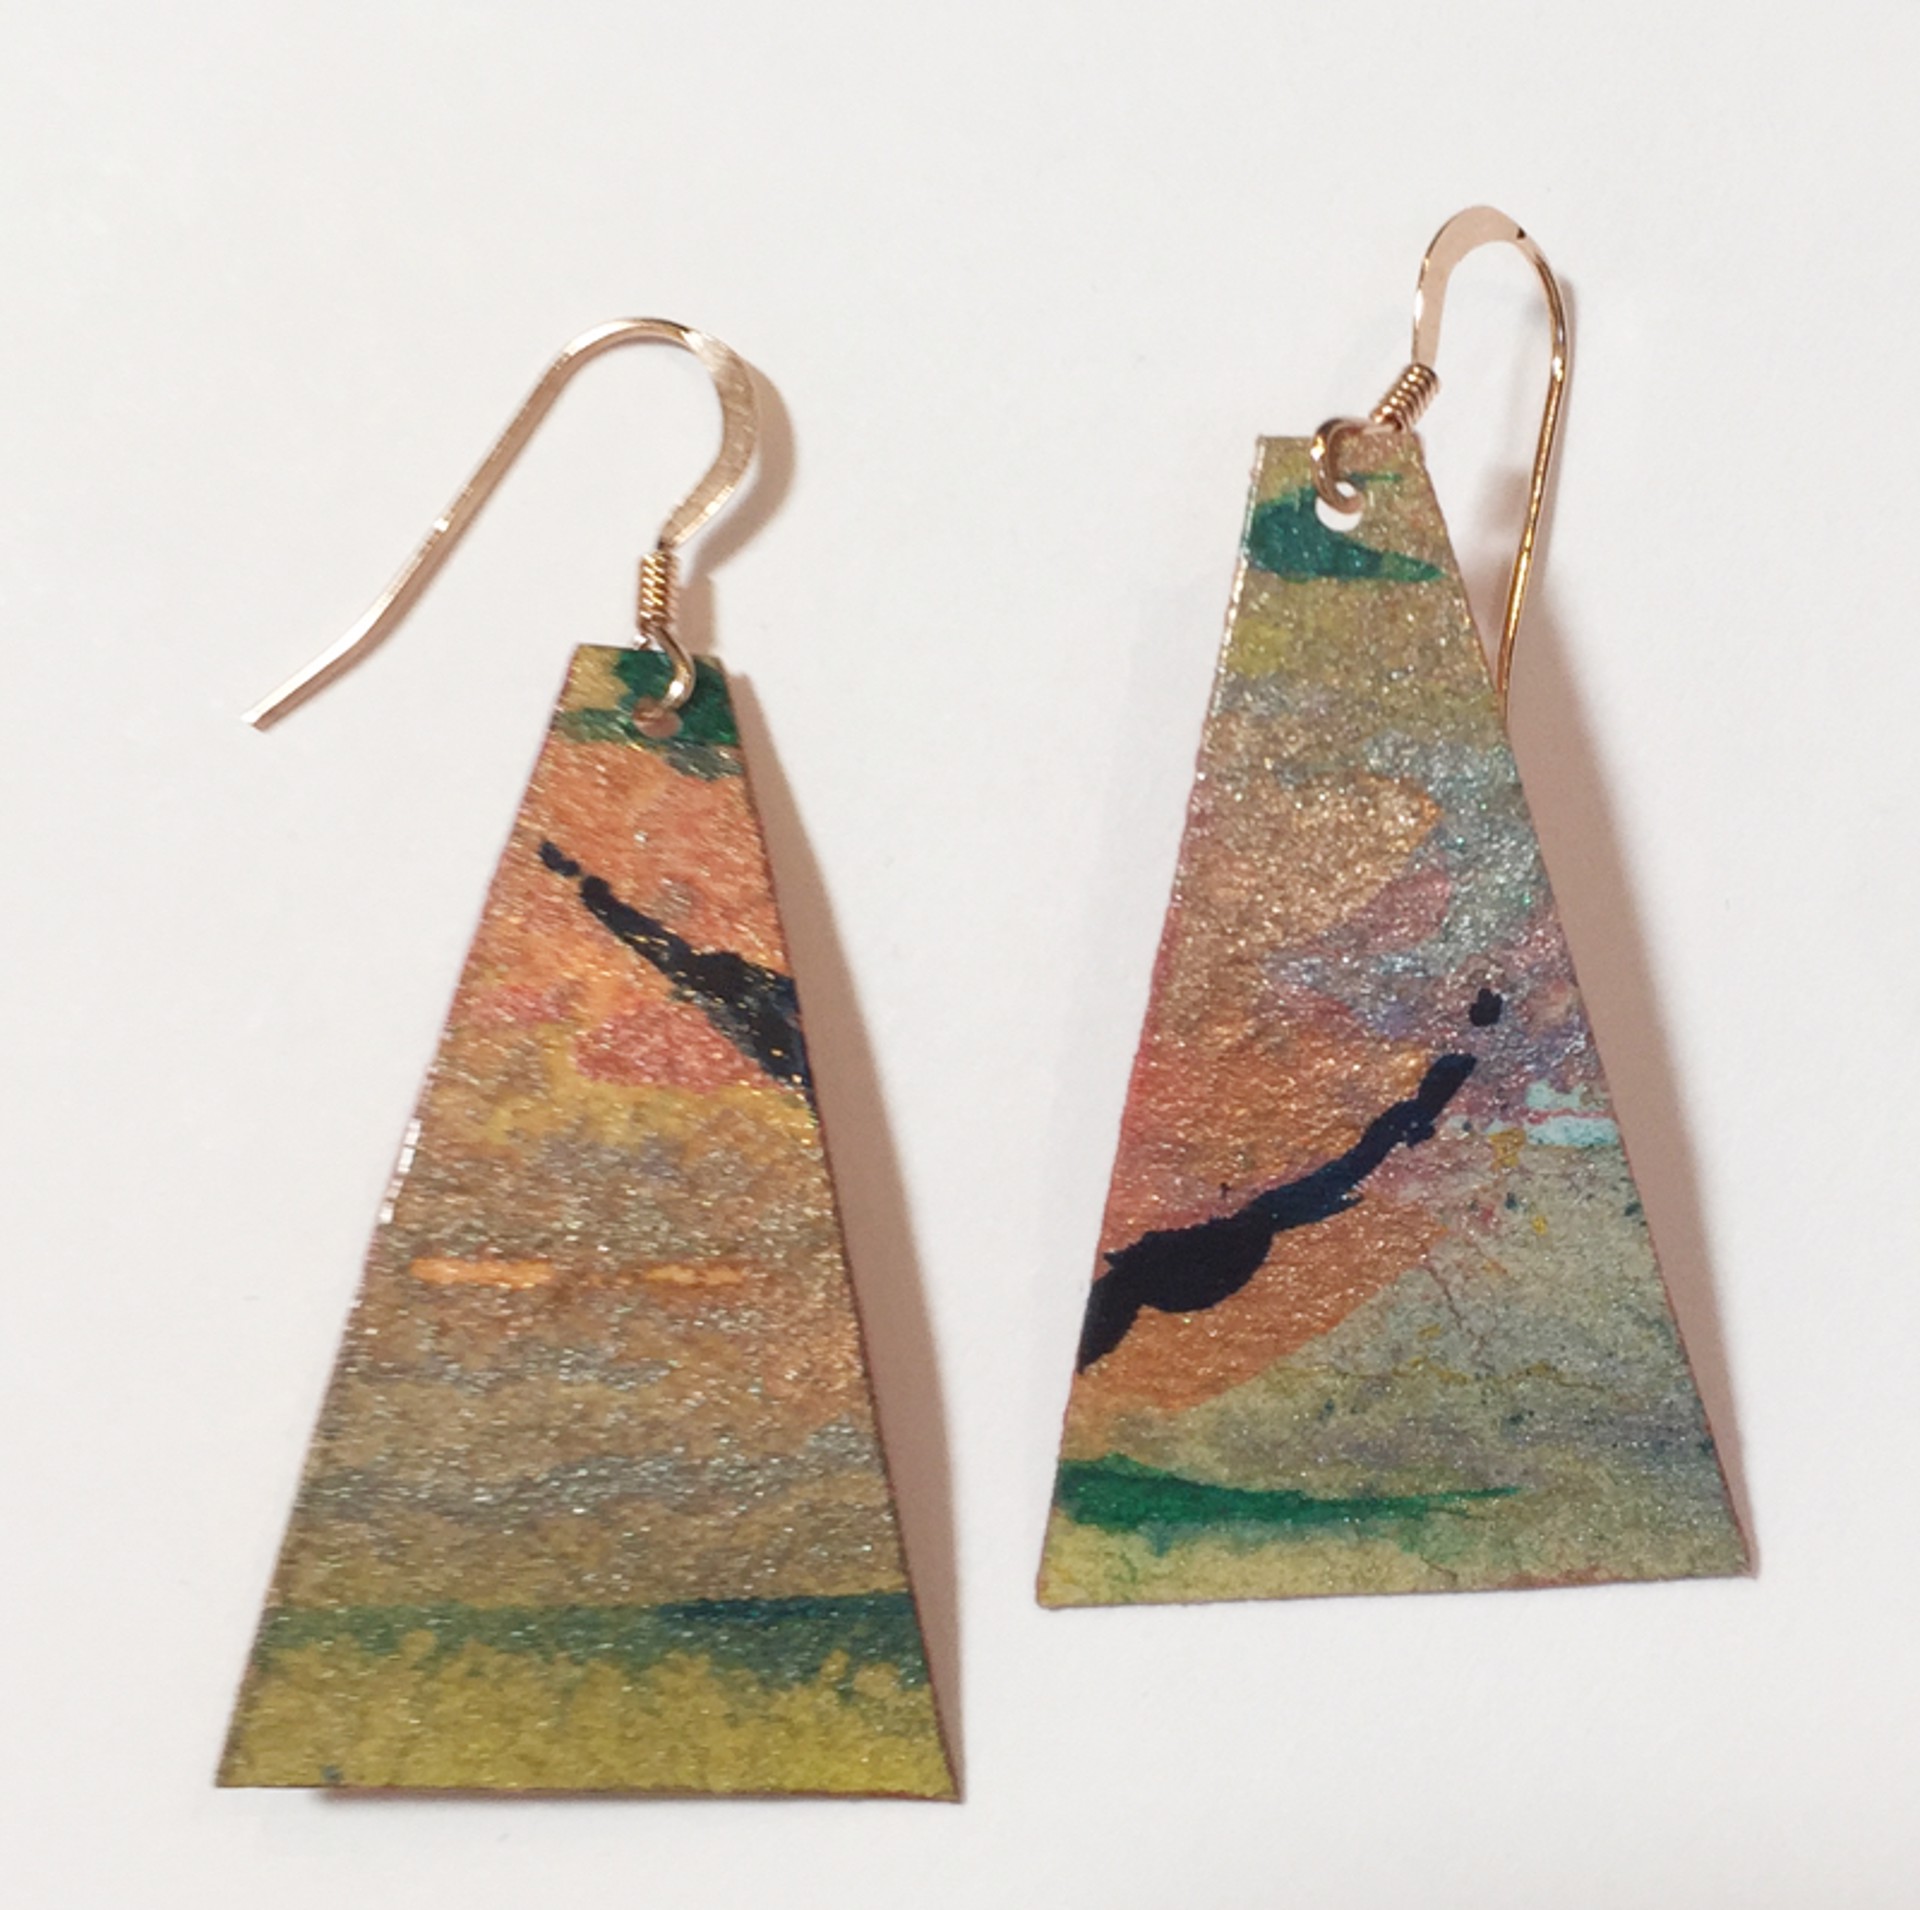 Earrings - Handpainted Paper Triangles by Jeanne Fellow